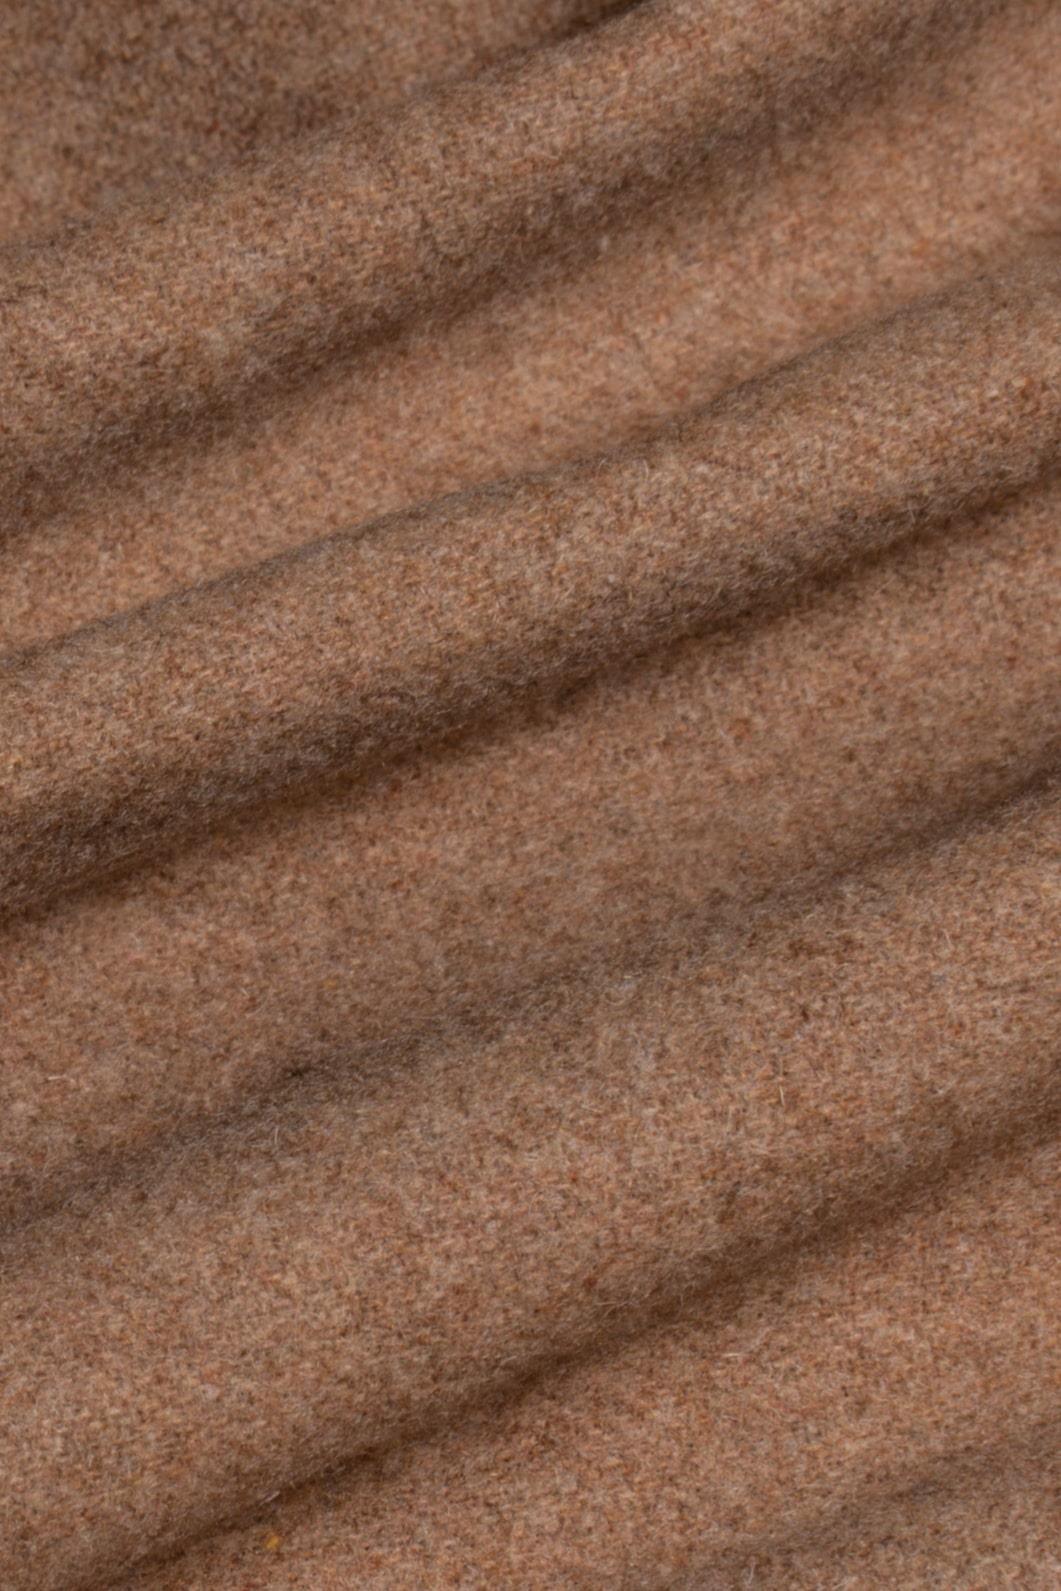 Michigan camel long coat fabric swatch